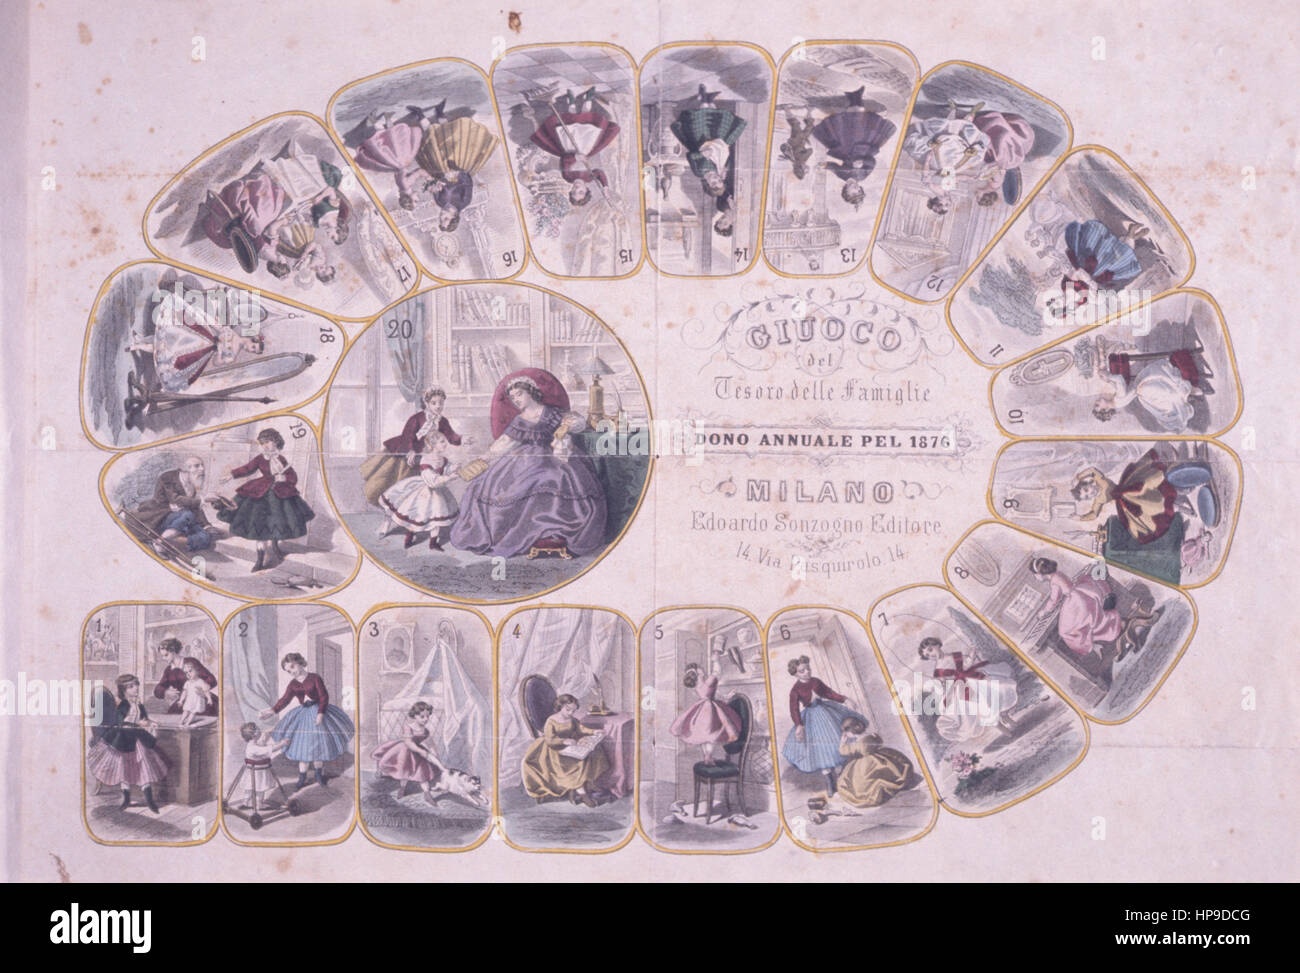 Giuoco del Tesoro Delle Famiglie, Spiel des Schatzes der Haushalte, Jahresgabe von 1876 Stockfoto